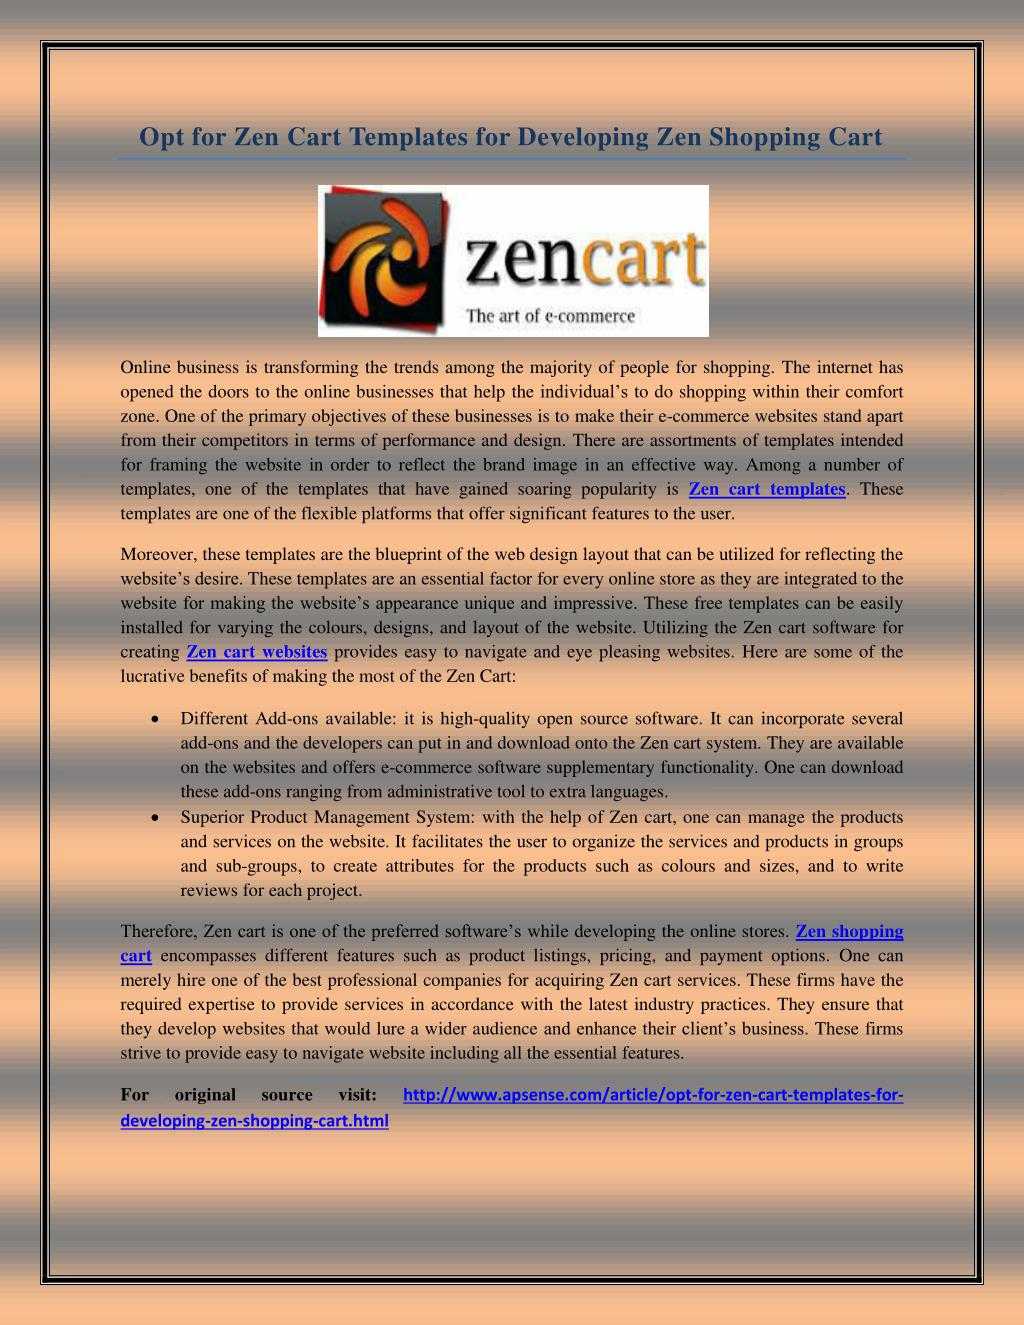 Ppt – Opt For Zen Cart Templates For Developing Zen Shopping Throughout Presentation Zen Powerpoint Templates